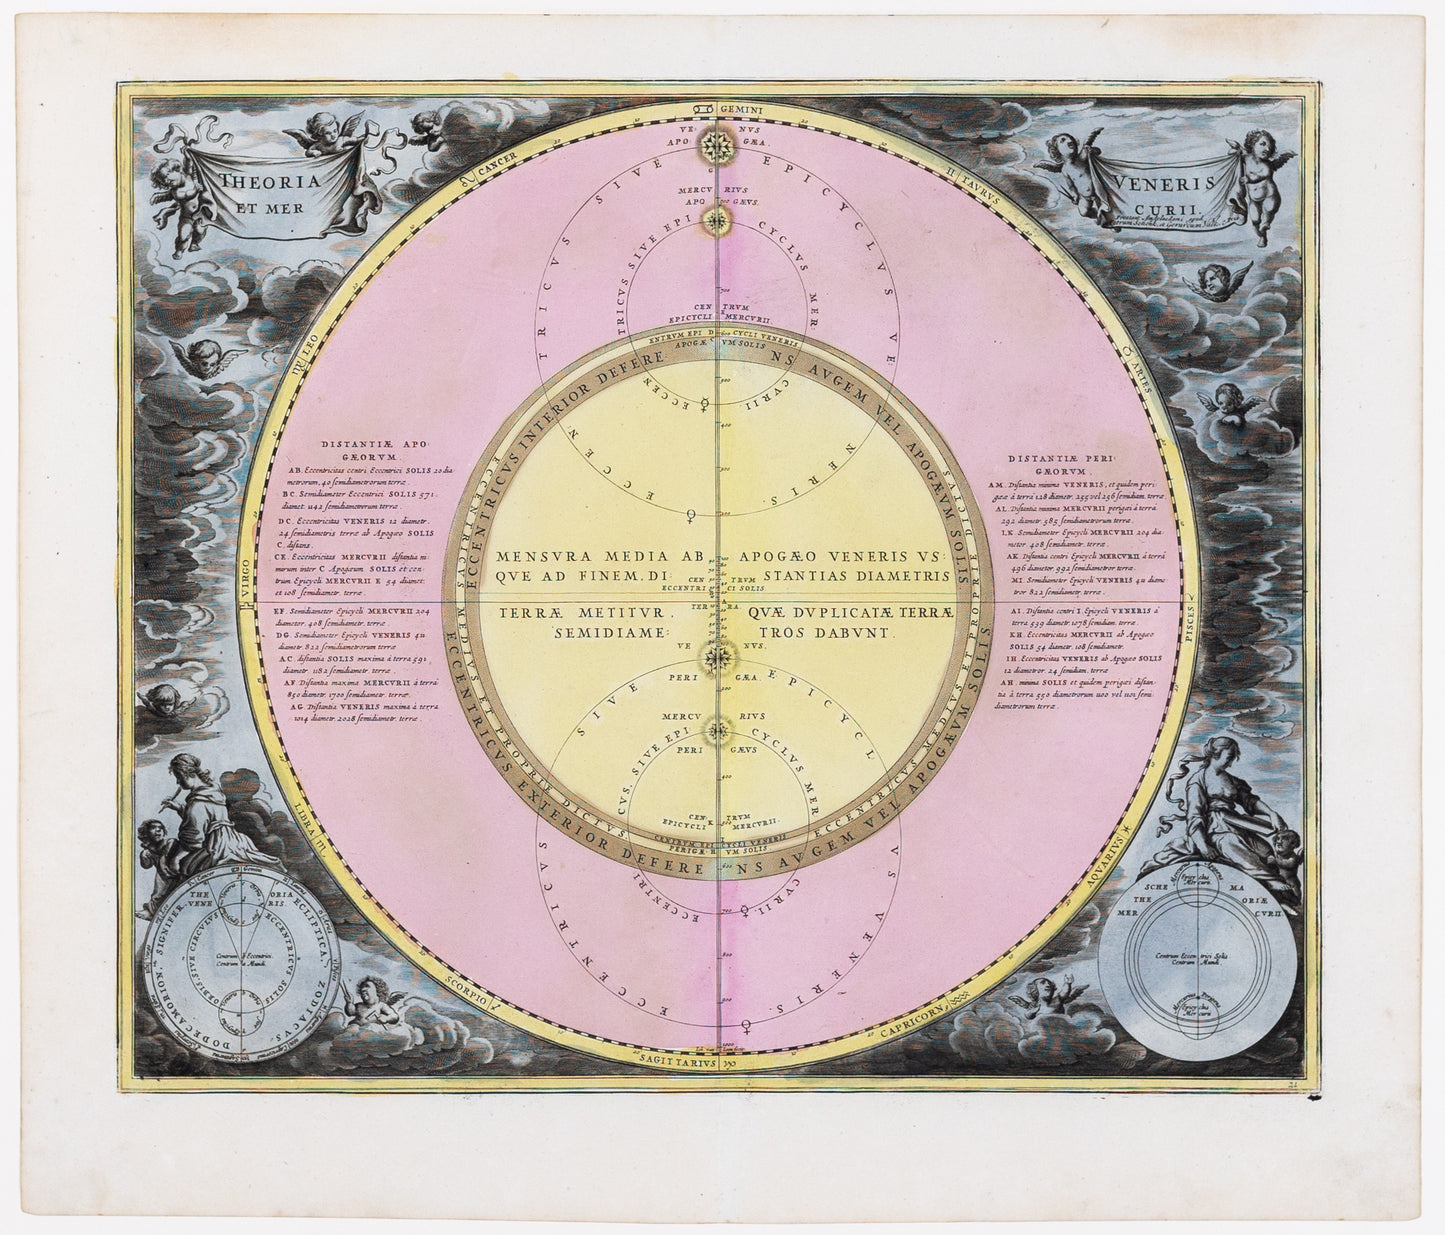 Cellarius, Andreas. Theoria Veneris et mercurii. Amsterdam: 1708